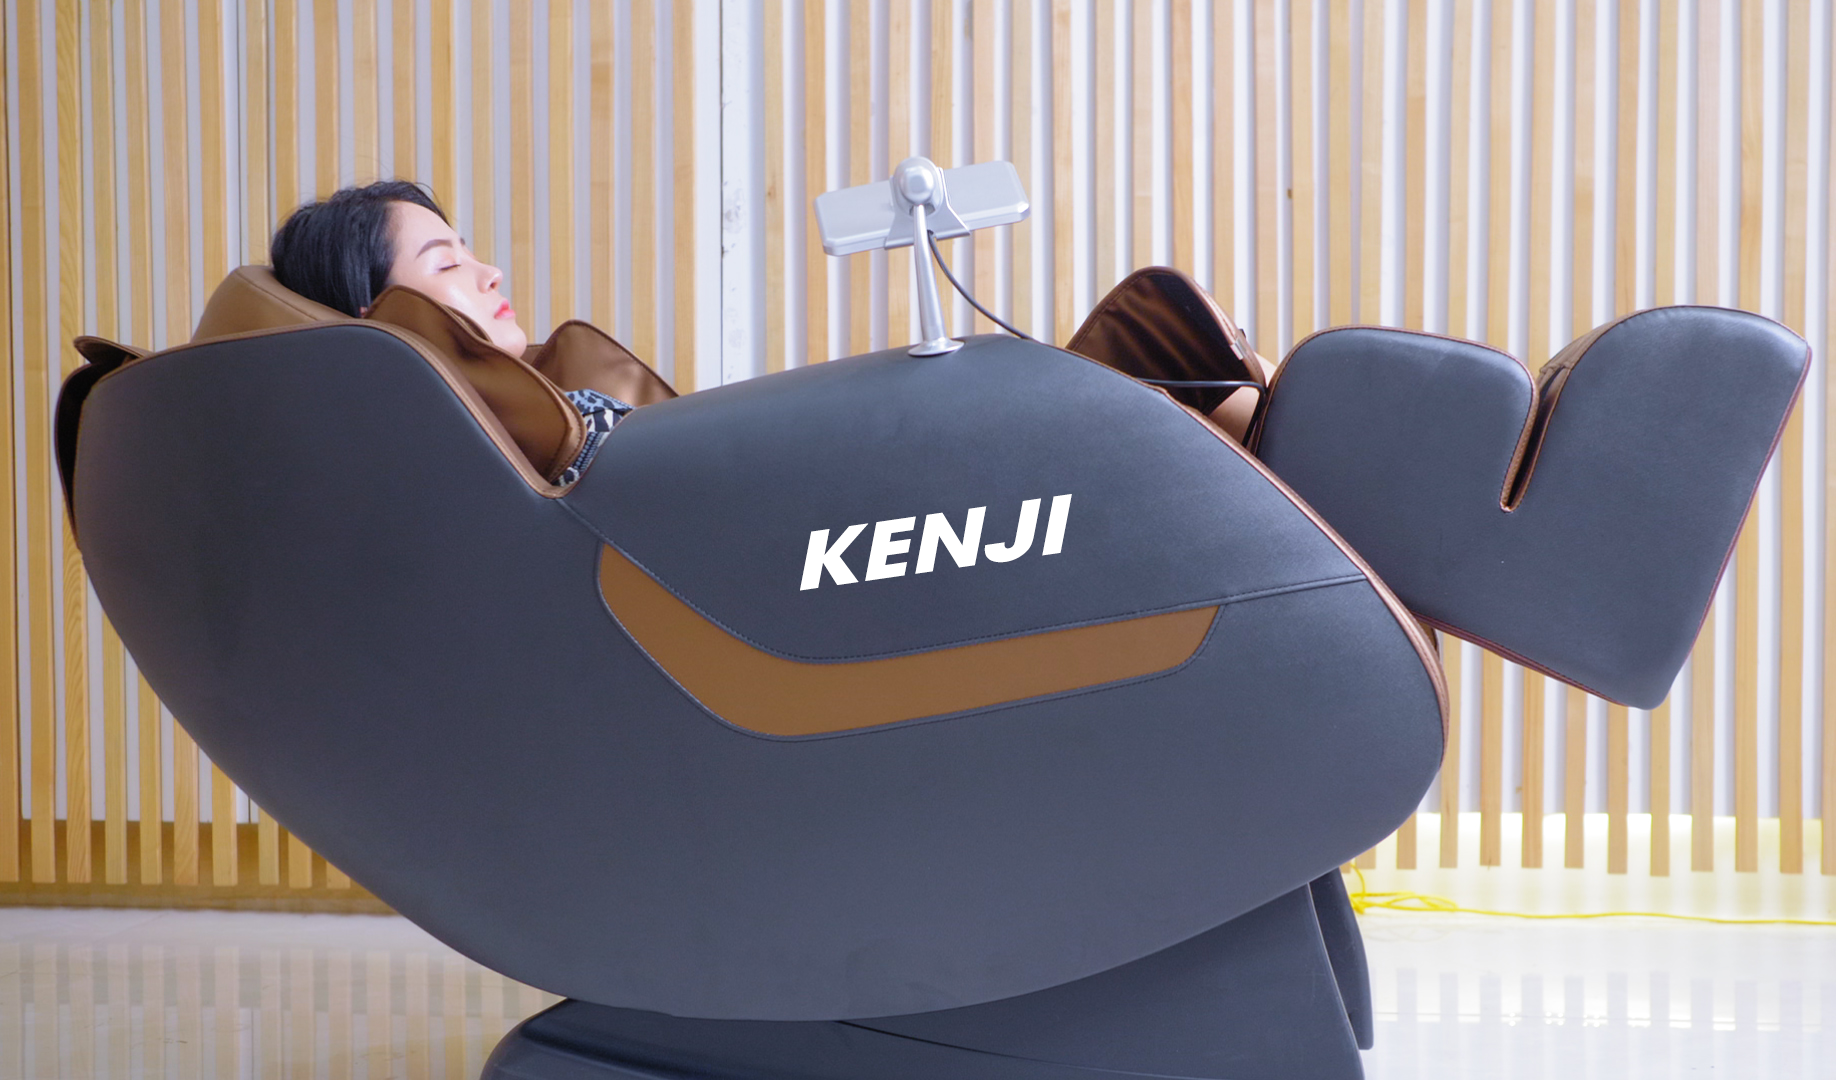 Tham Khảo Nhanh: Ghế Massage Kenji Của Nước Nào?